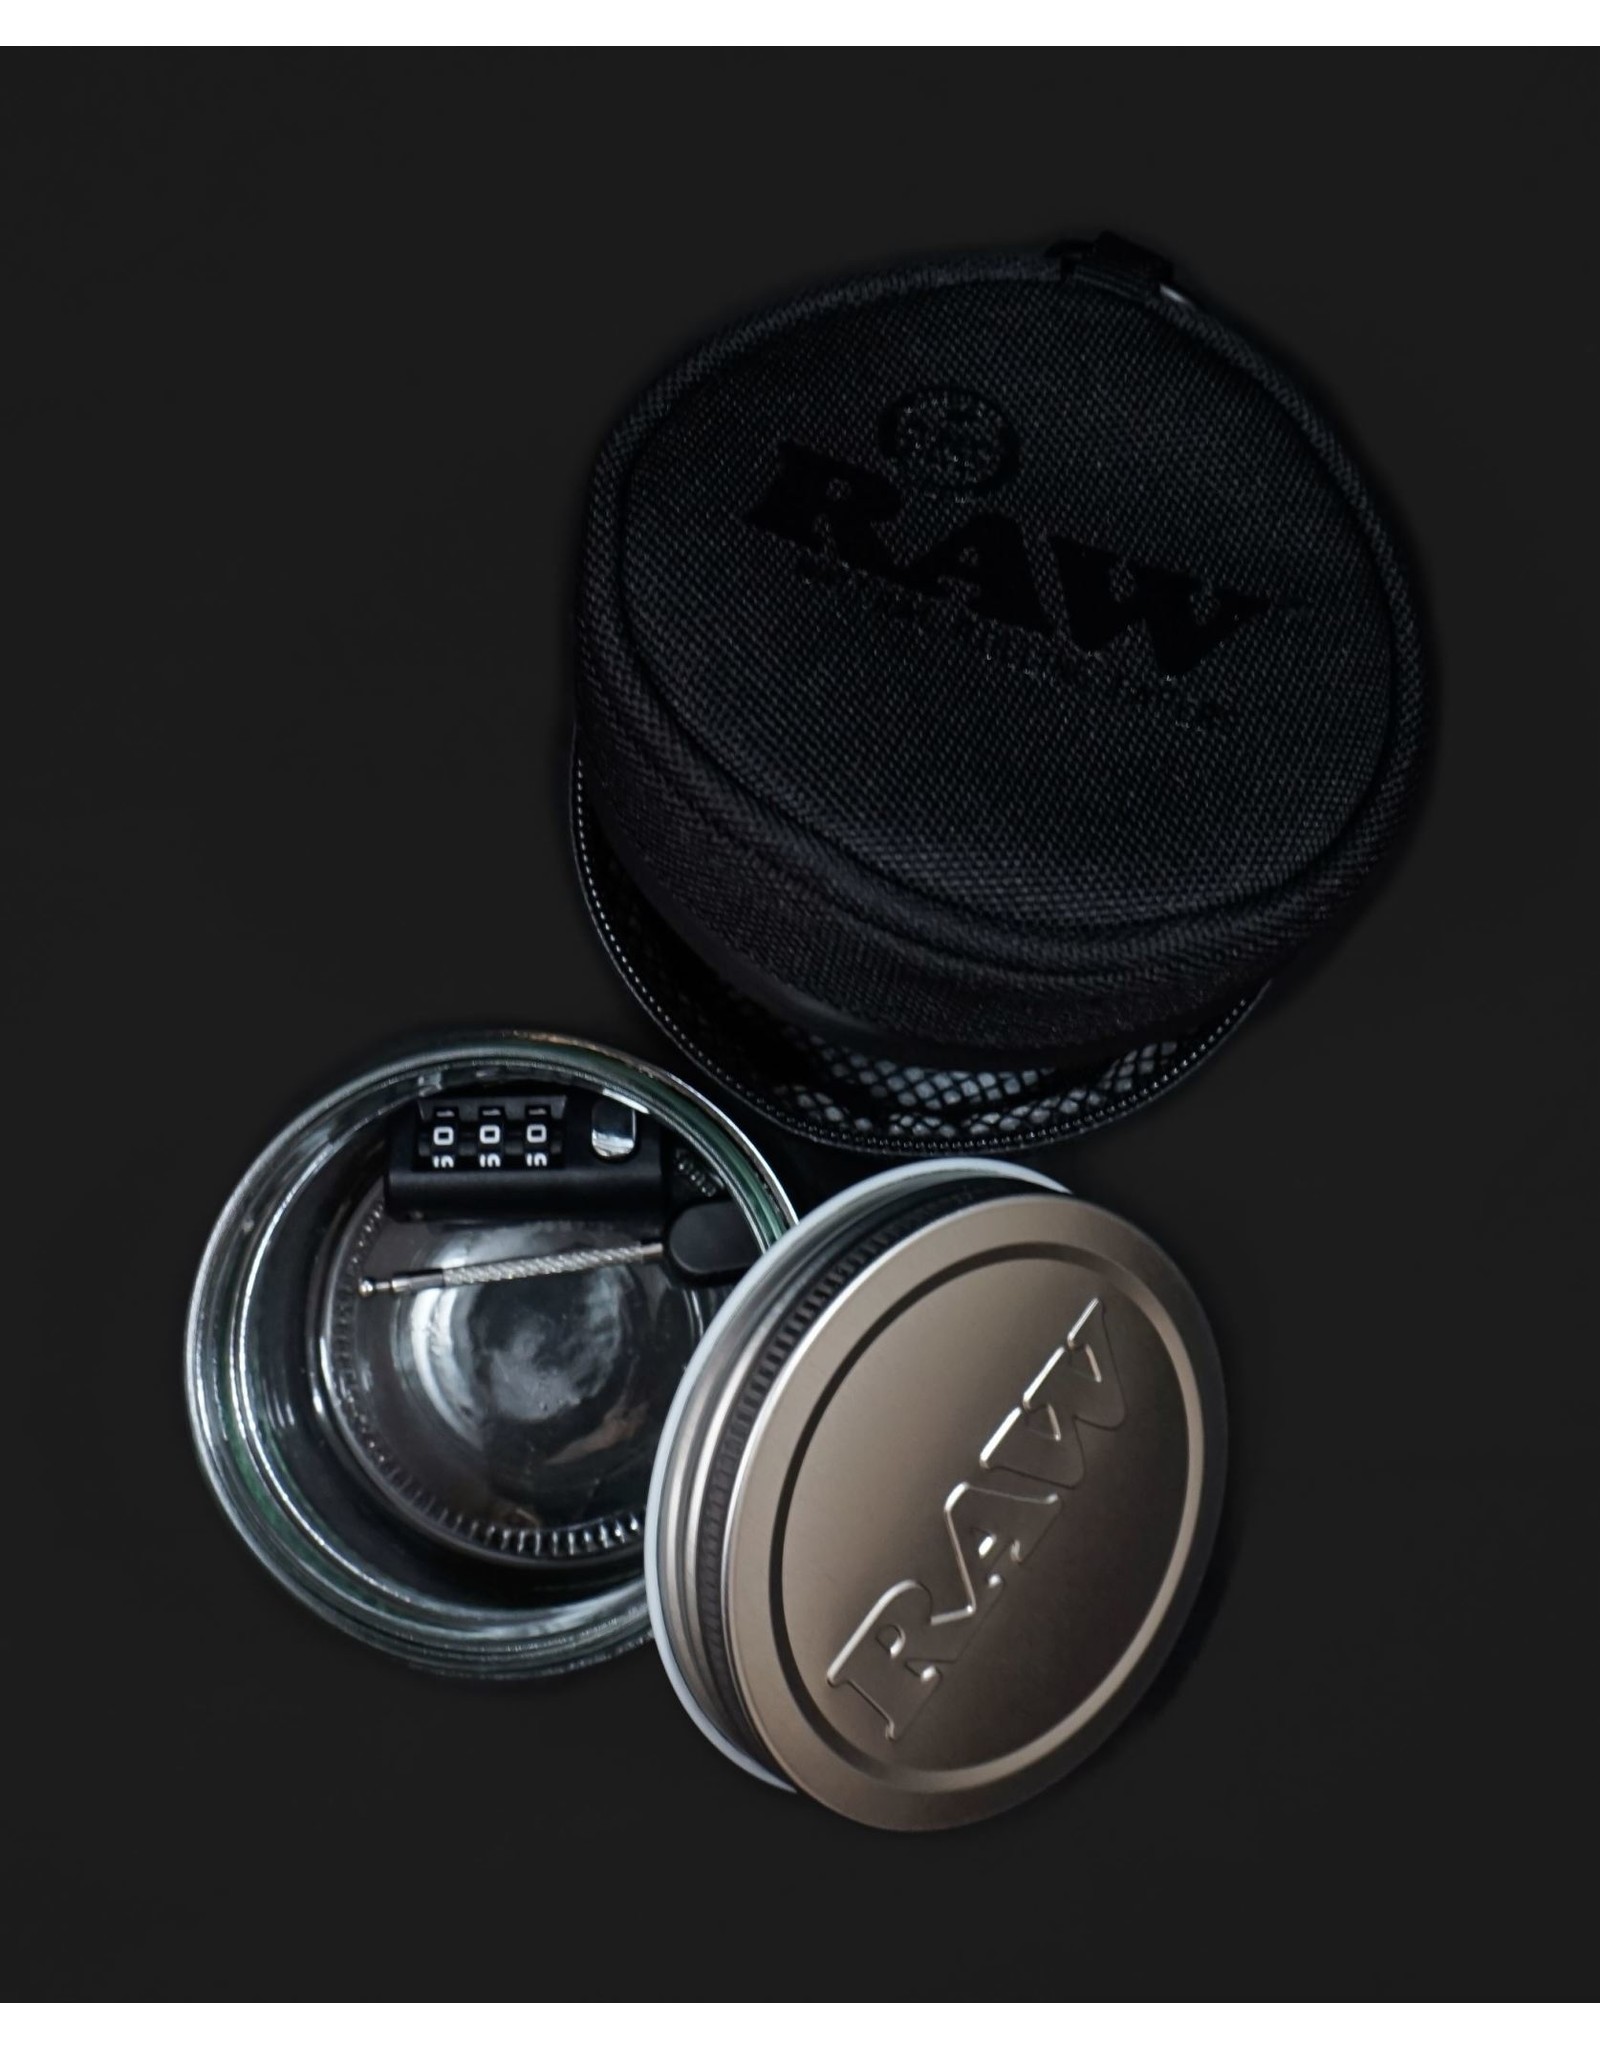 Raw Raw Smell-Proof  6oz Jar & Cozy w/ Lock